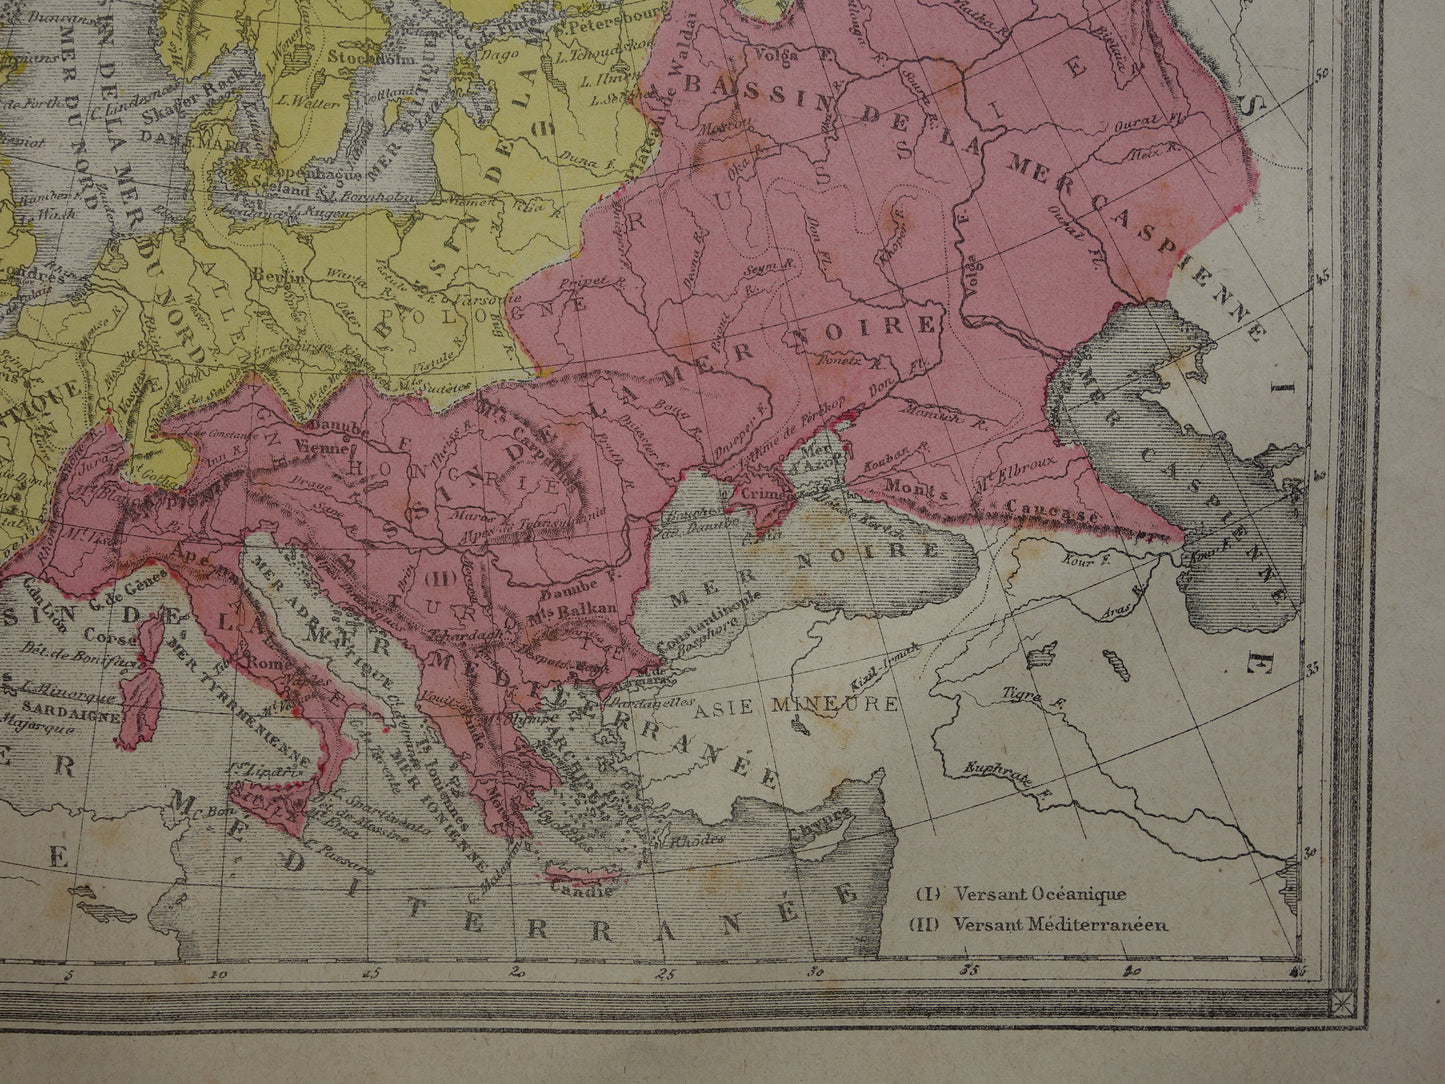 Oude kaart van rivieren in Europa uit 1877 originele antieke handgekleurde landkaart vintage geologie kaarten